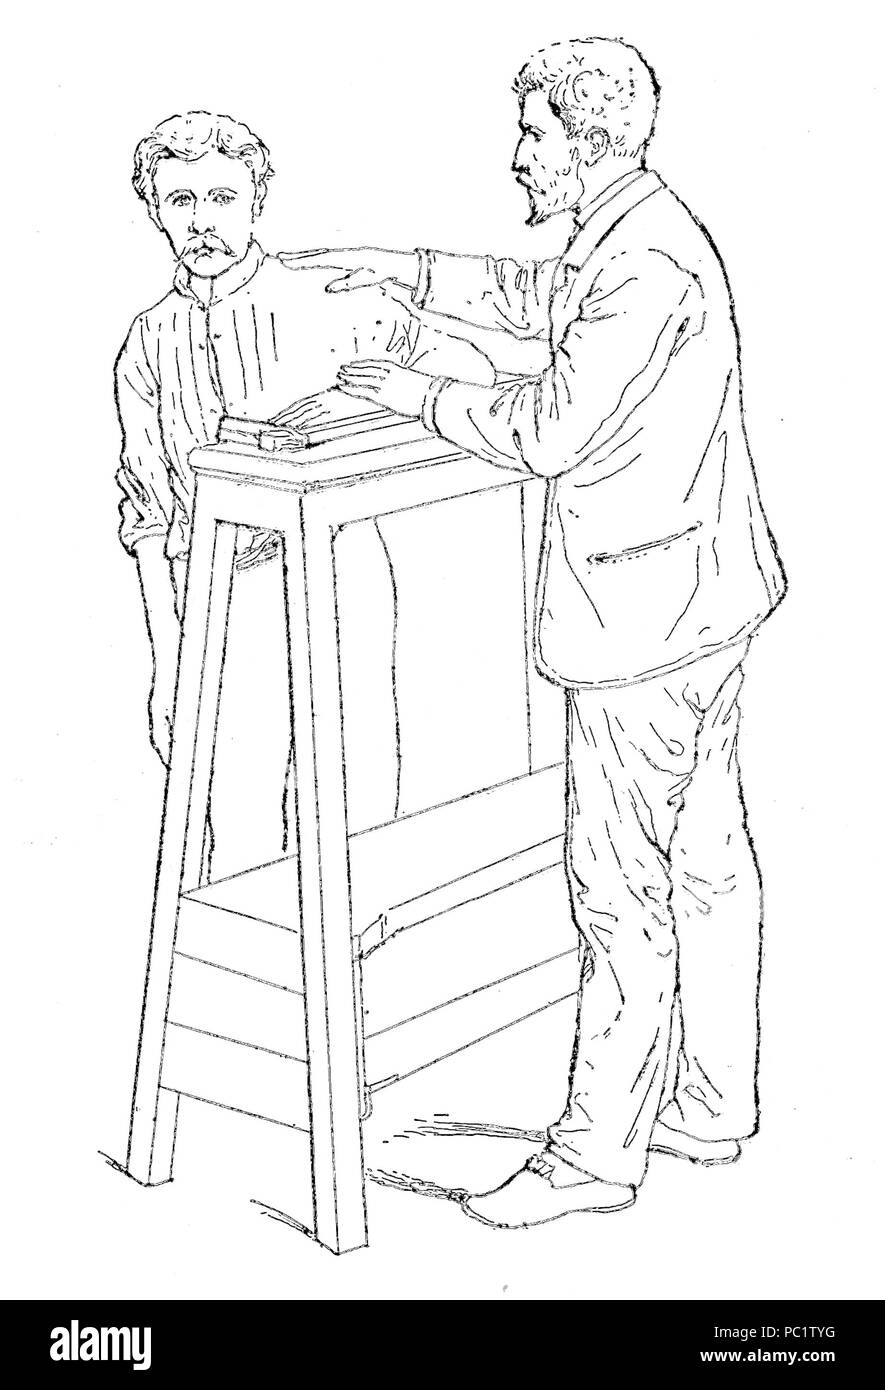 14 Bertillon - Identification anthropométrique (1893) 274 n&amp;b Stock Photo